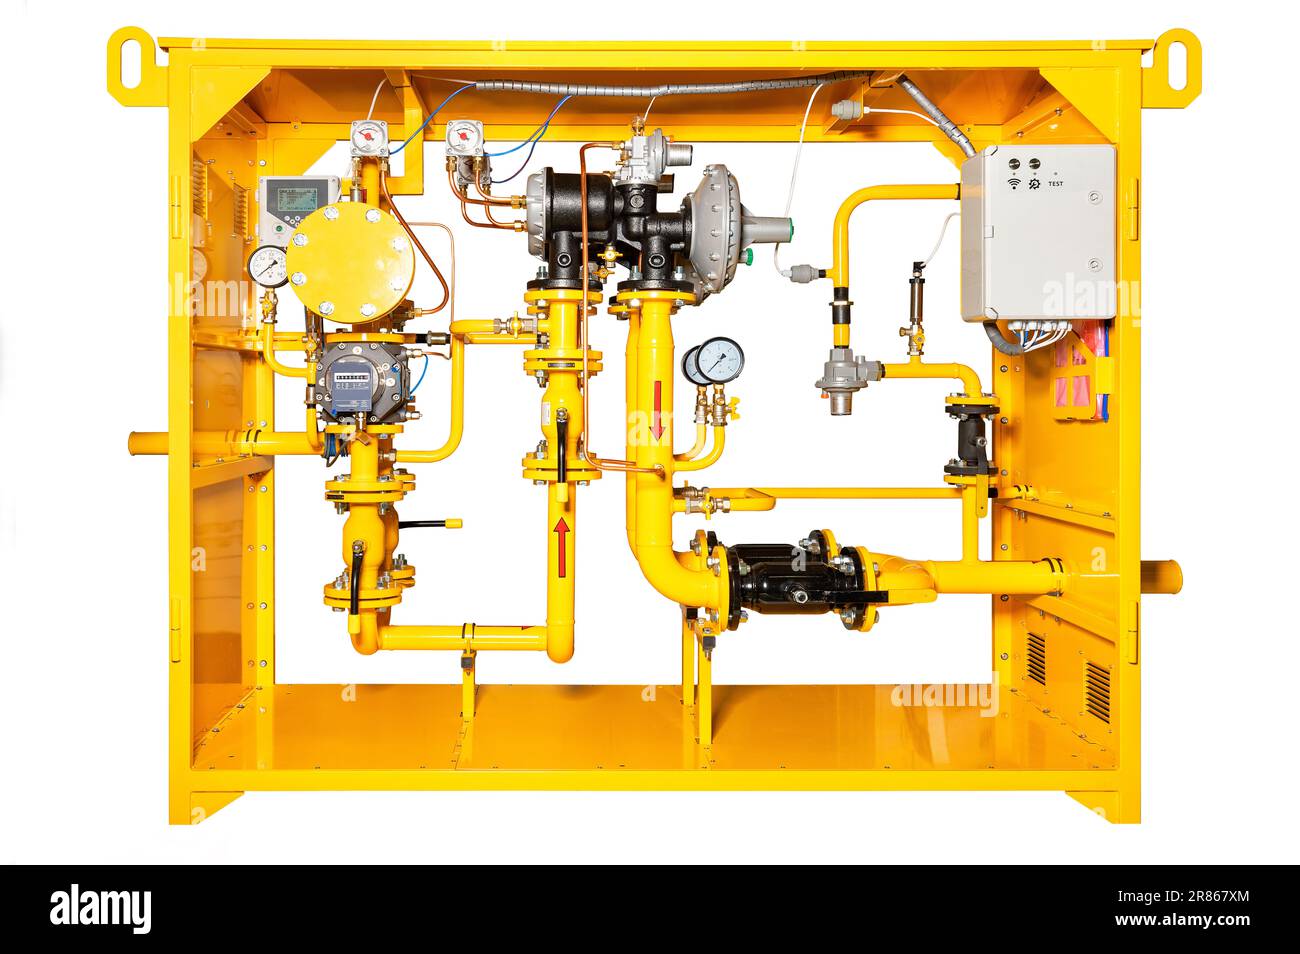 Die Gaskontrollstation ist ein vollständiges Fertigprodukt zur Senkung des Gasdrucks. Das Bild wird auf weißem Hintergrund isoliert. Stockfoto